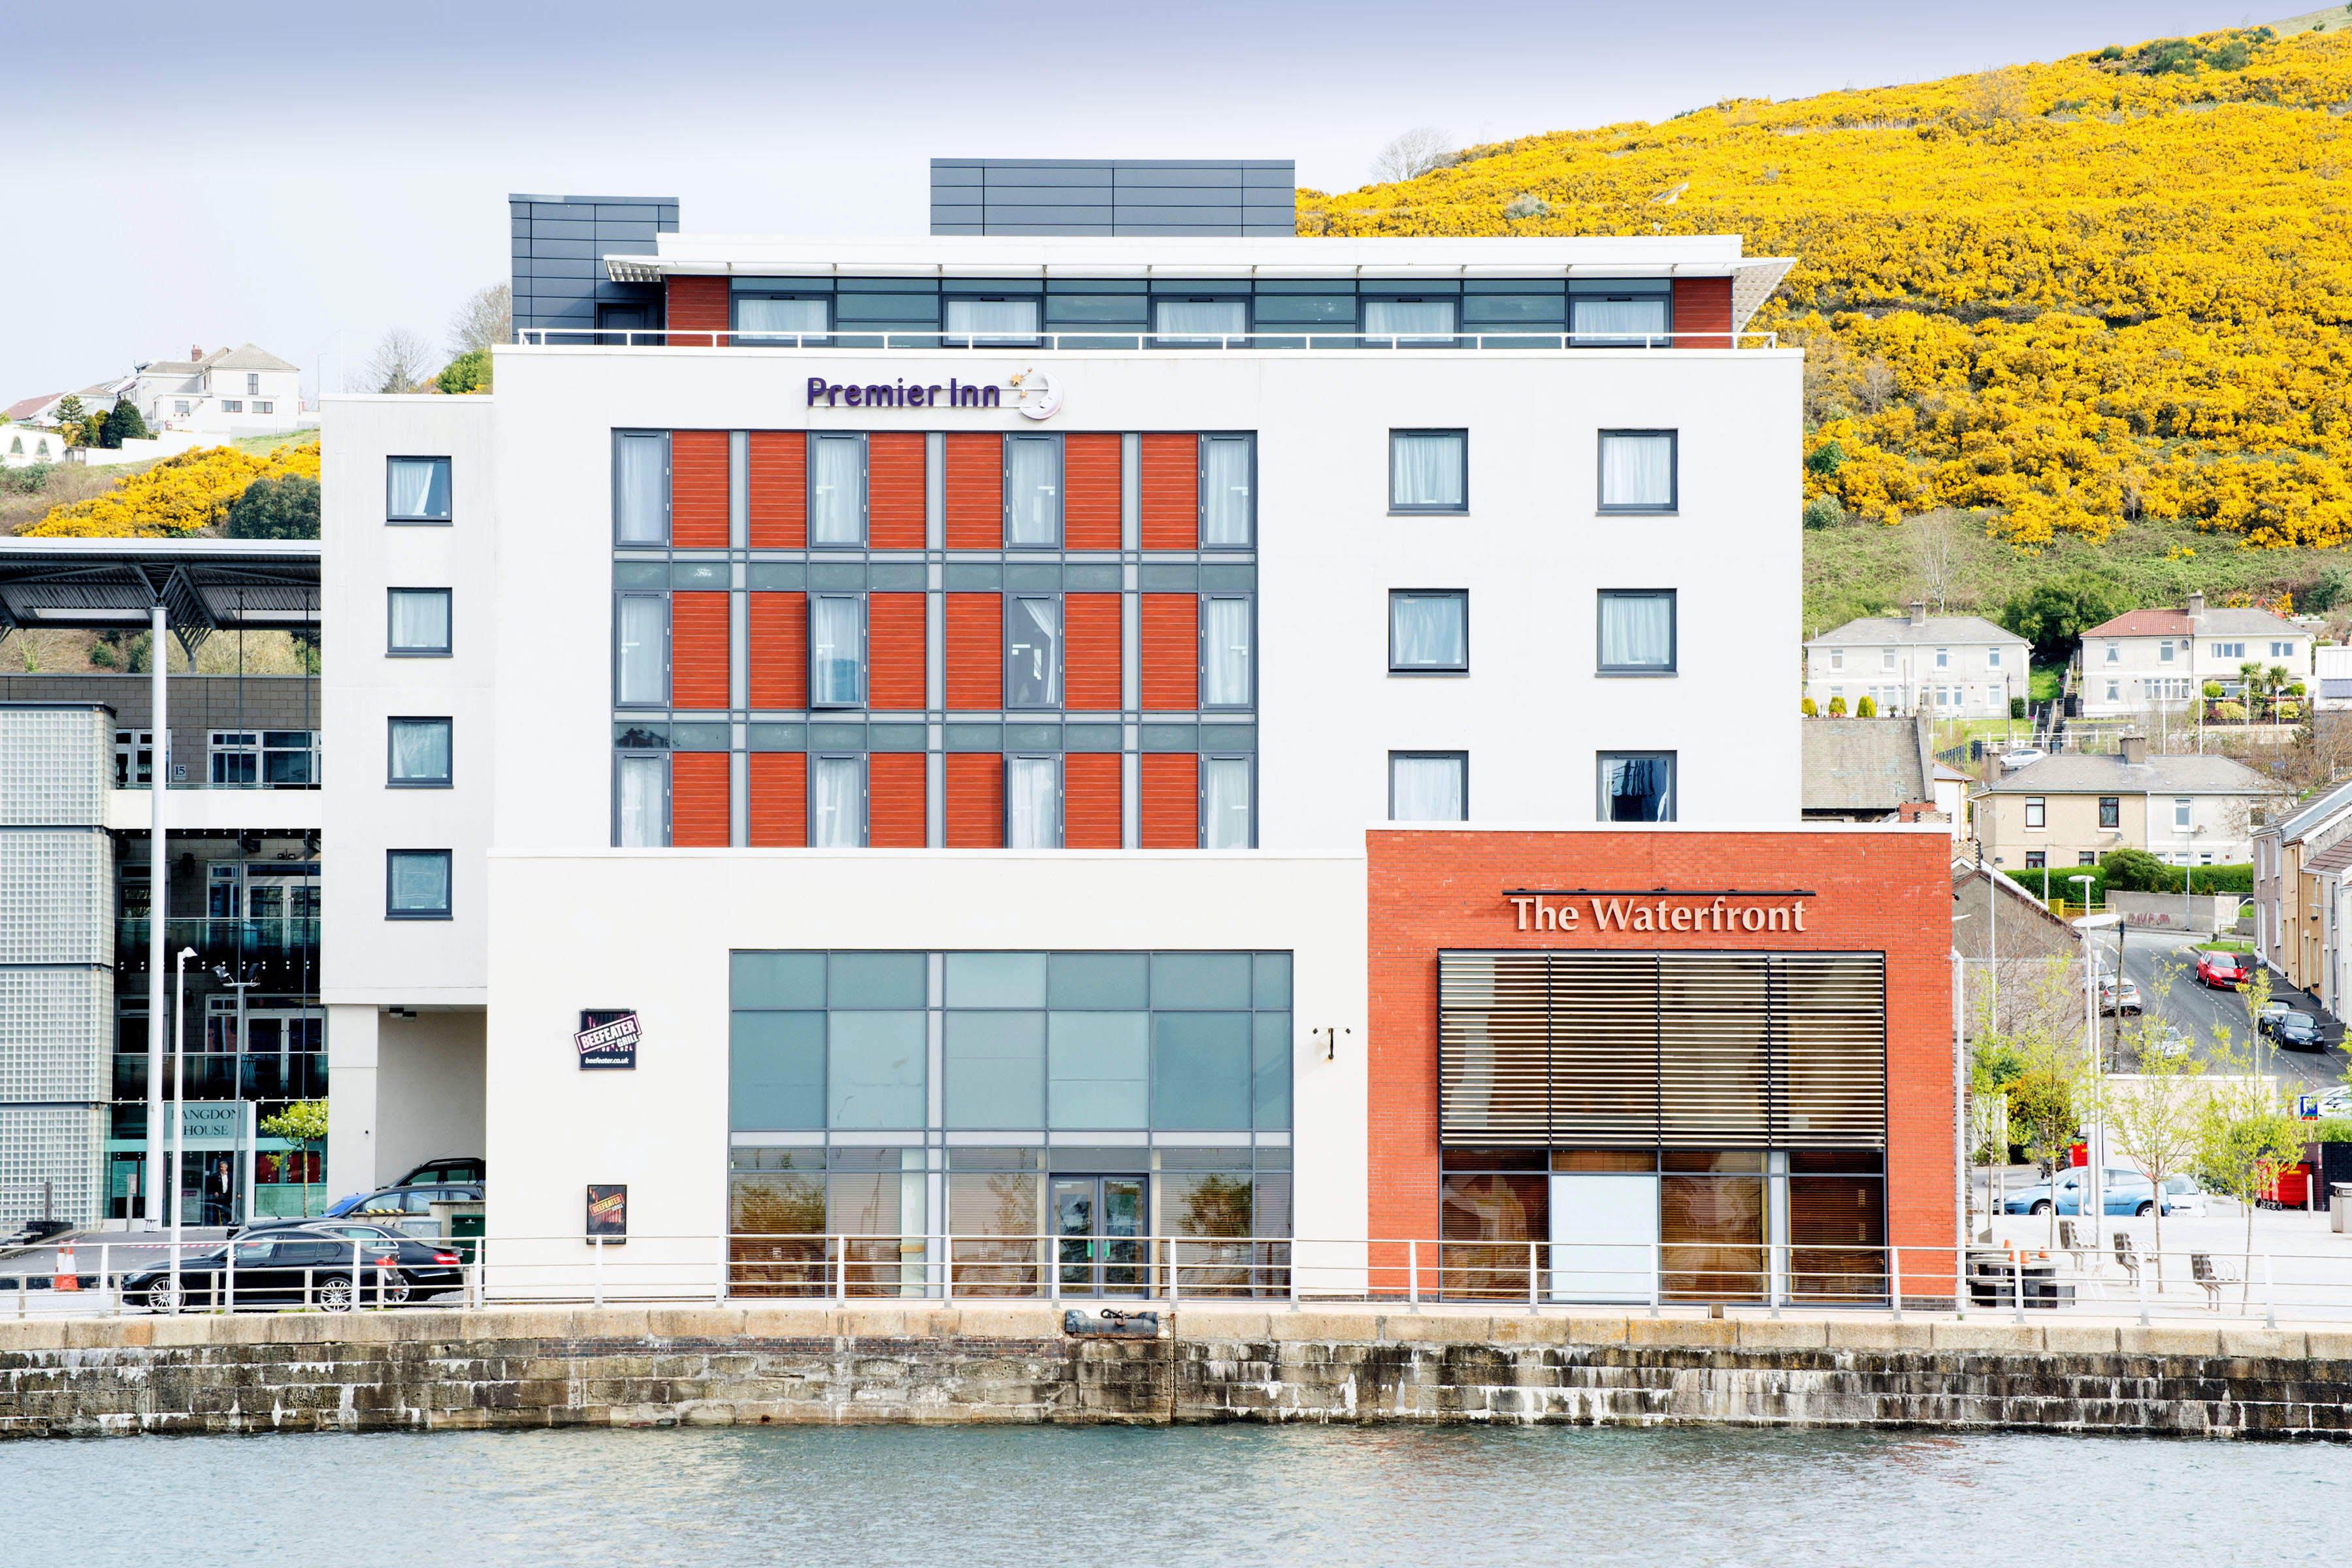 Swansea Waterfront Premier Inn Swansea Waterfront hotel Swansea 03333 219208